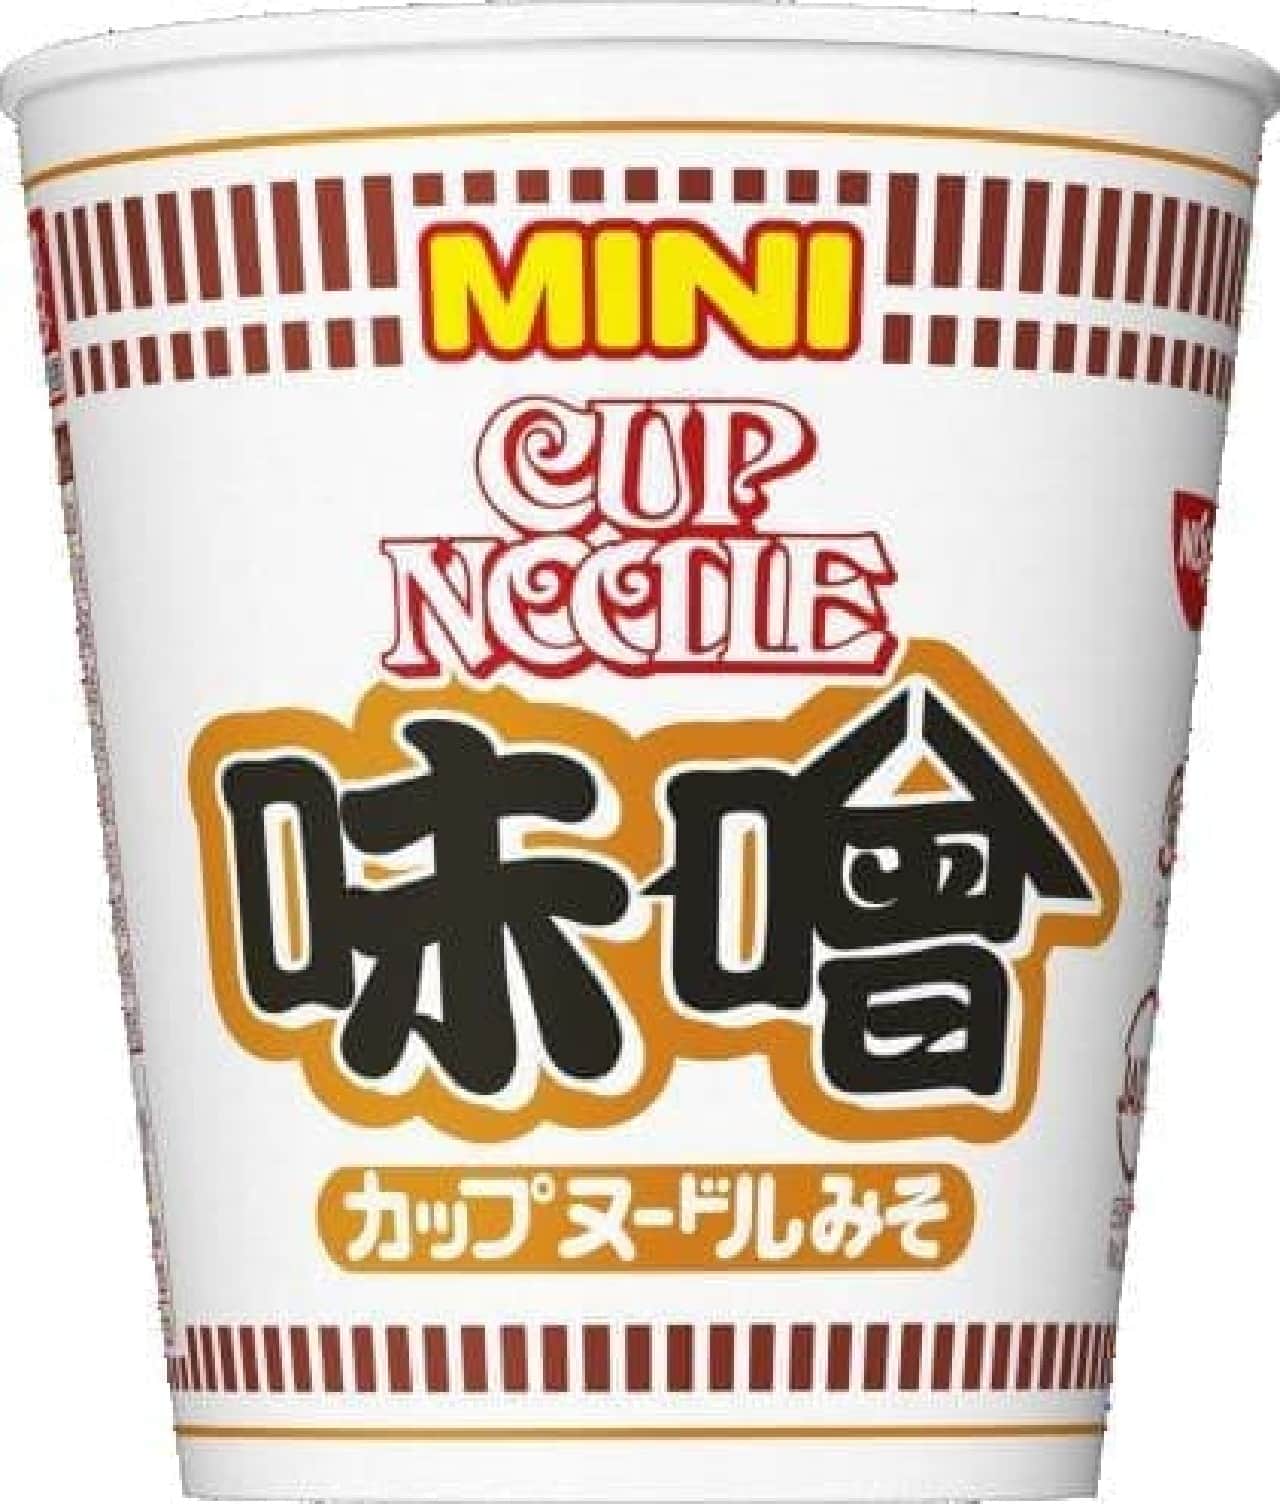 日清食品「カップヌードル 味噌 ミニ」